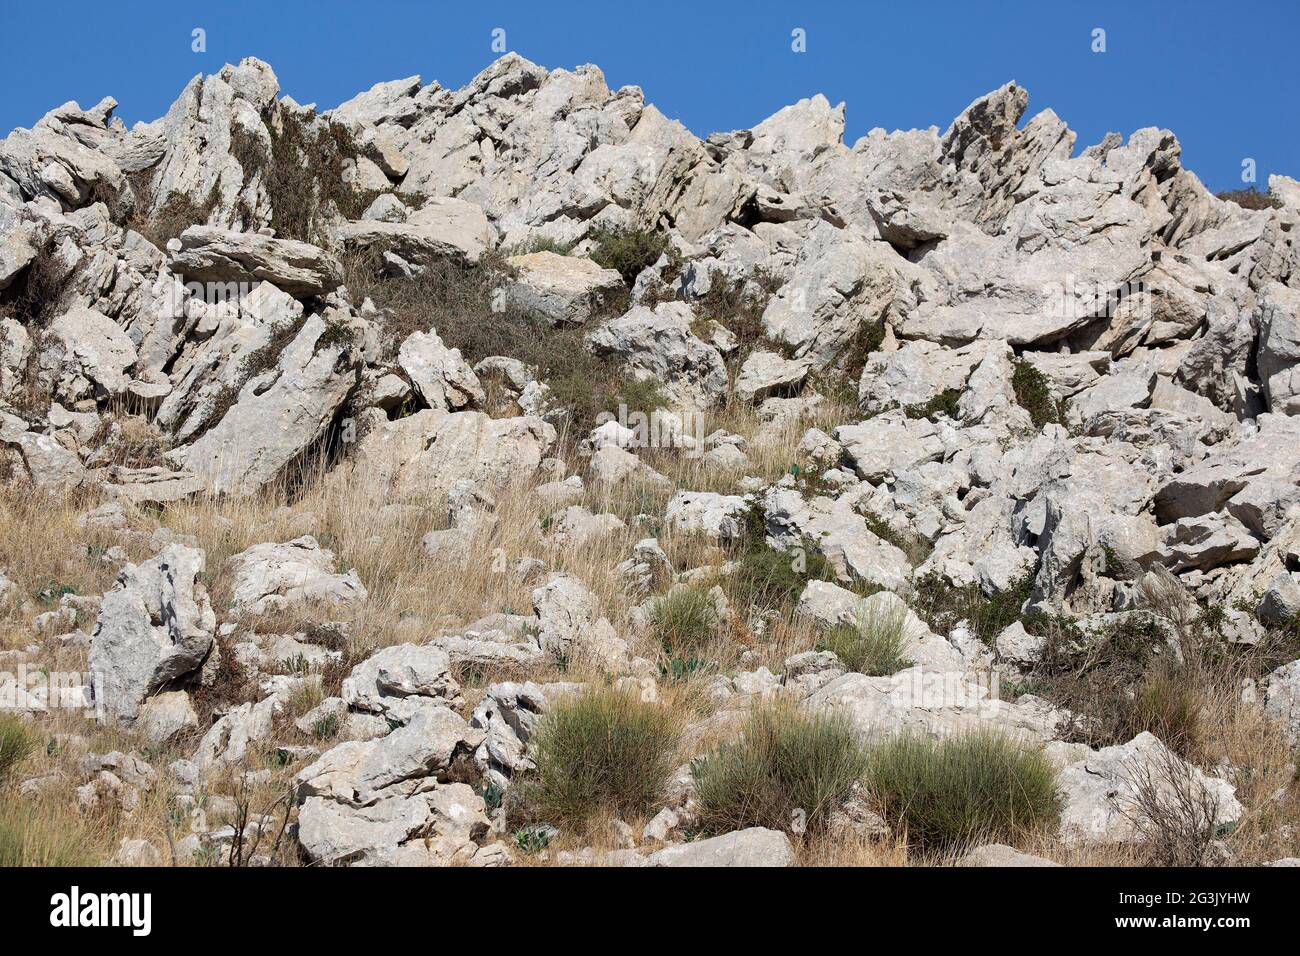 Aufschluss aus Jurassic Kalkstein an den unteren Hängen des Mt. Hermon im Norden Israels Stockfoto